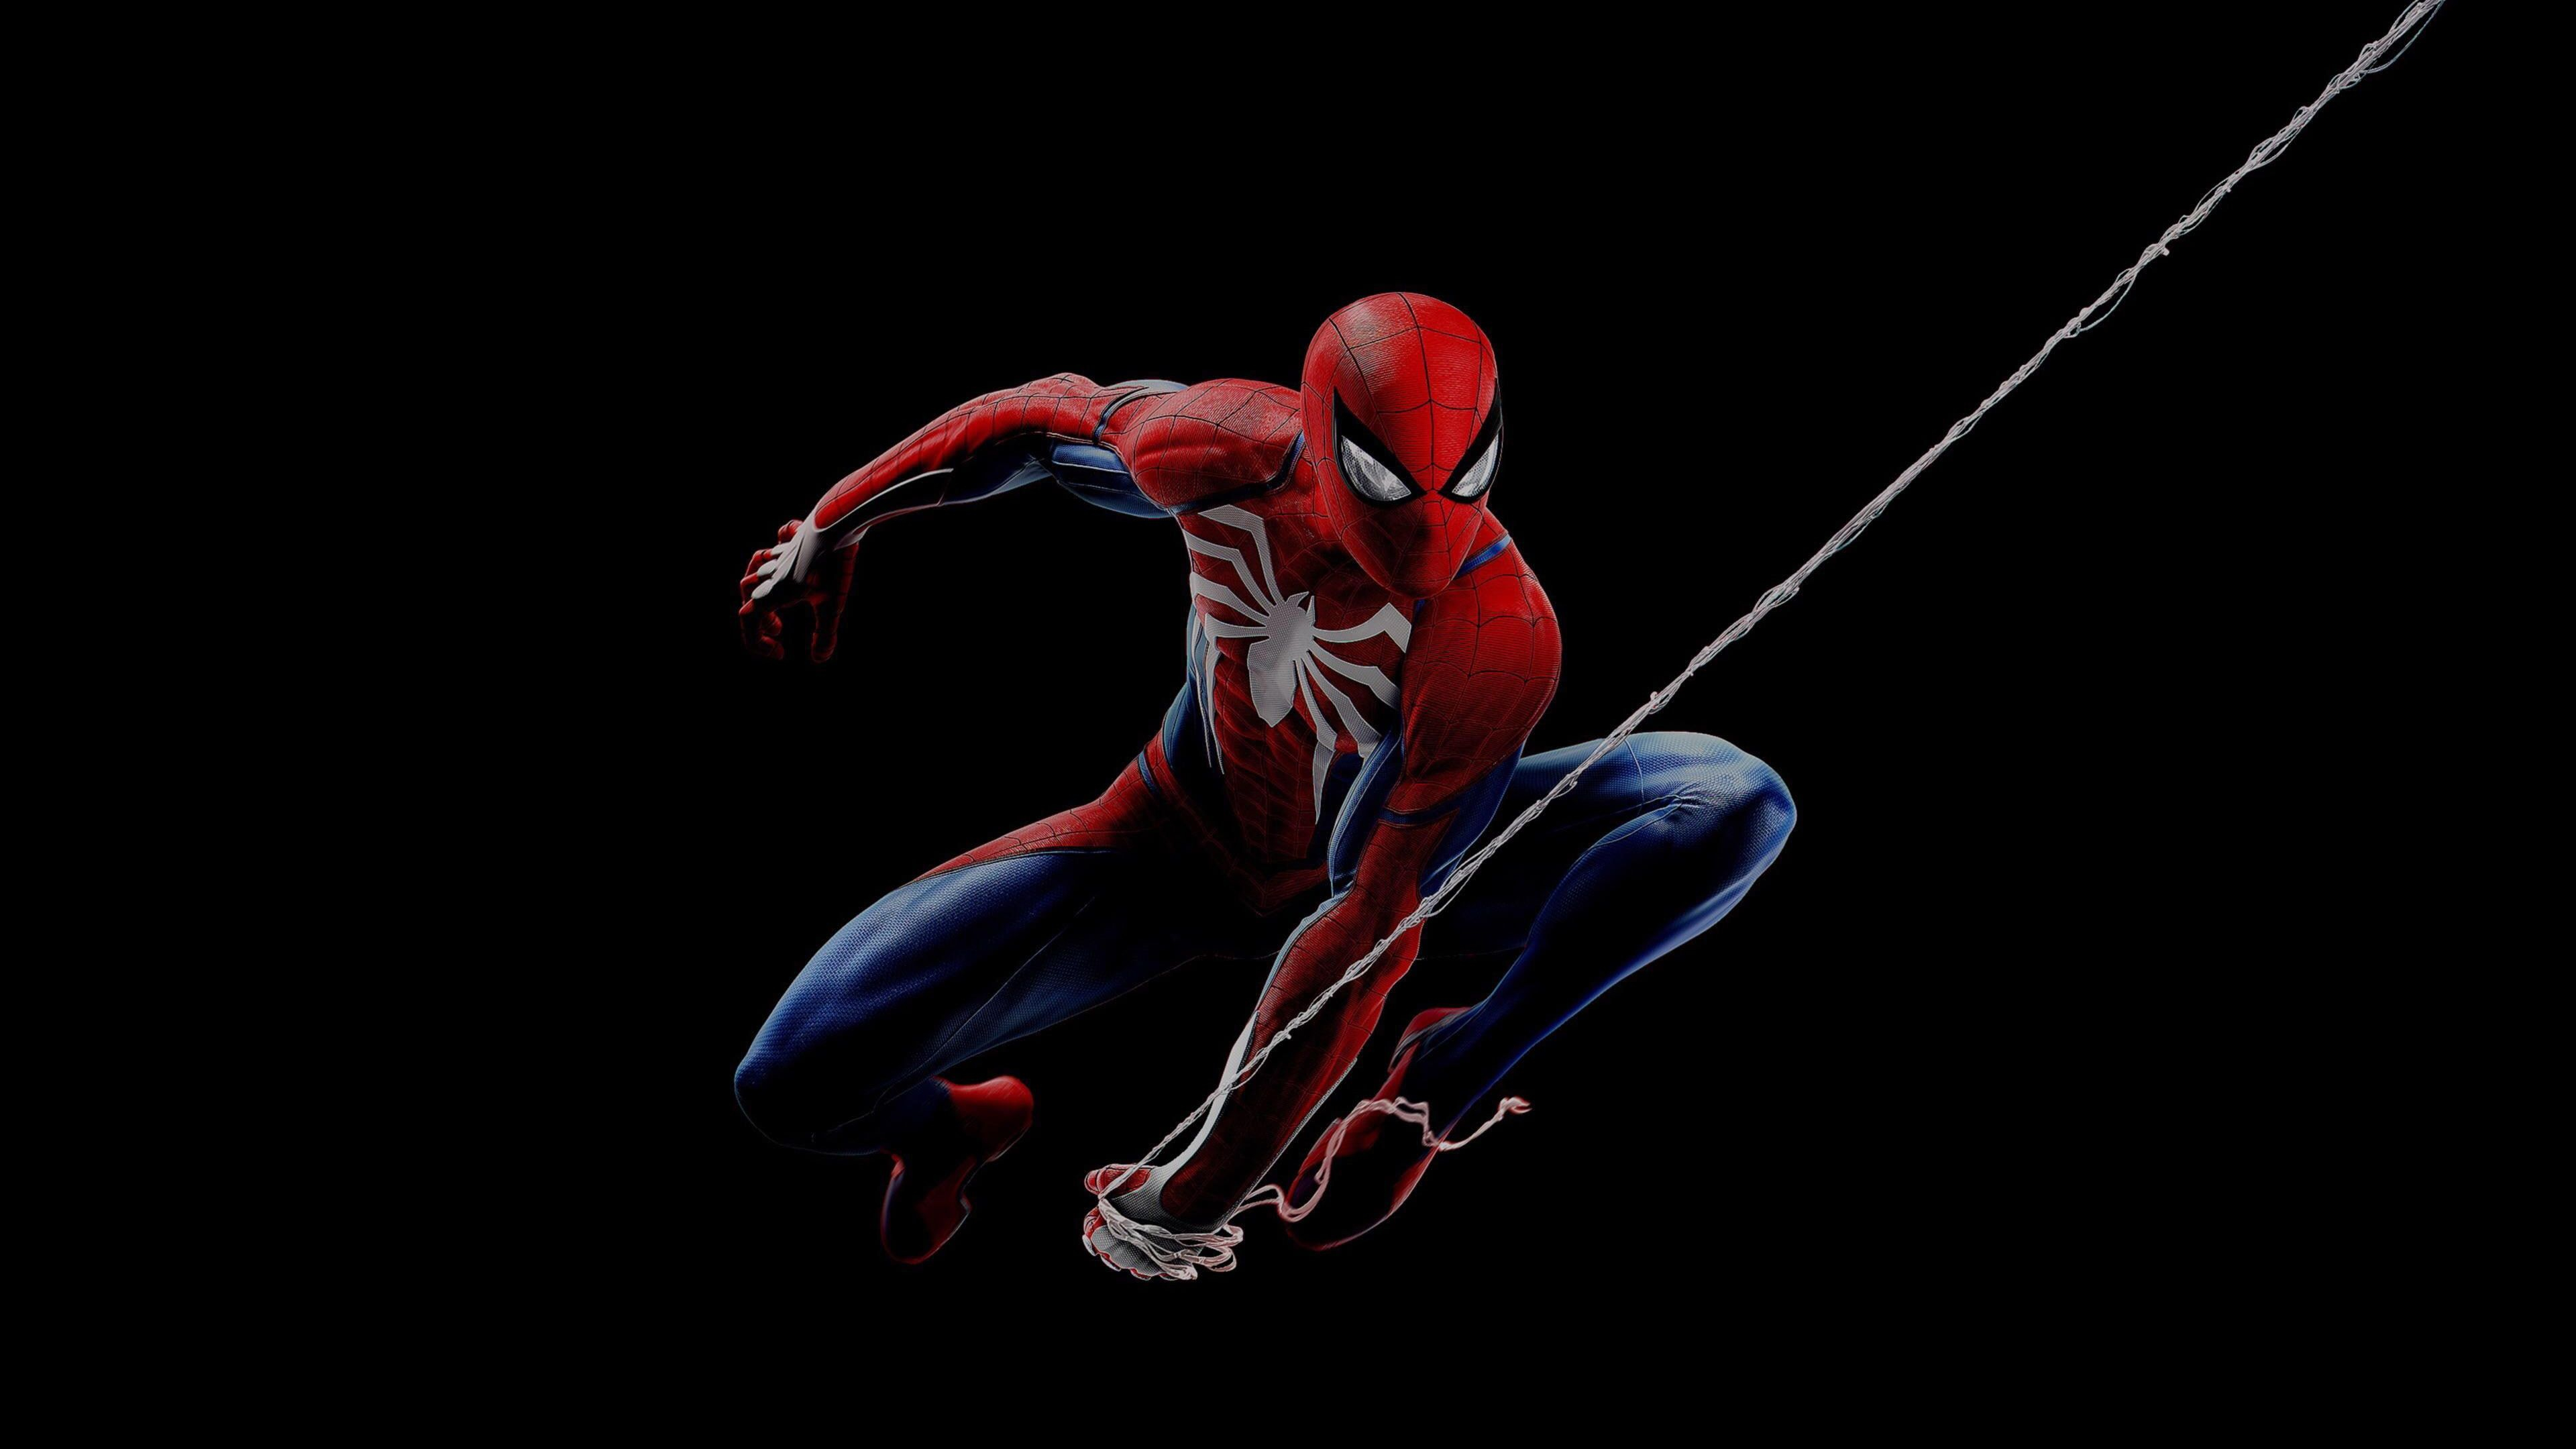 3840x2160 Dark background PlayStation 4 #PS4 #4K Marvel Comics #Spider-Man #4K # wallpaper #hdwallpaper #desktop | Spiderman ps4, Spiderman, Spider-man wallpaper